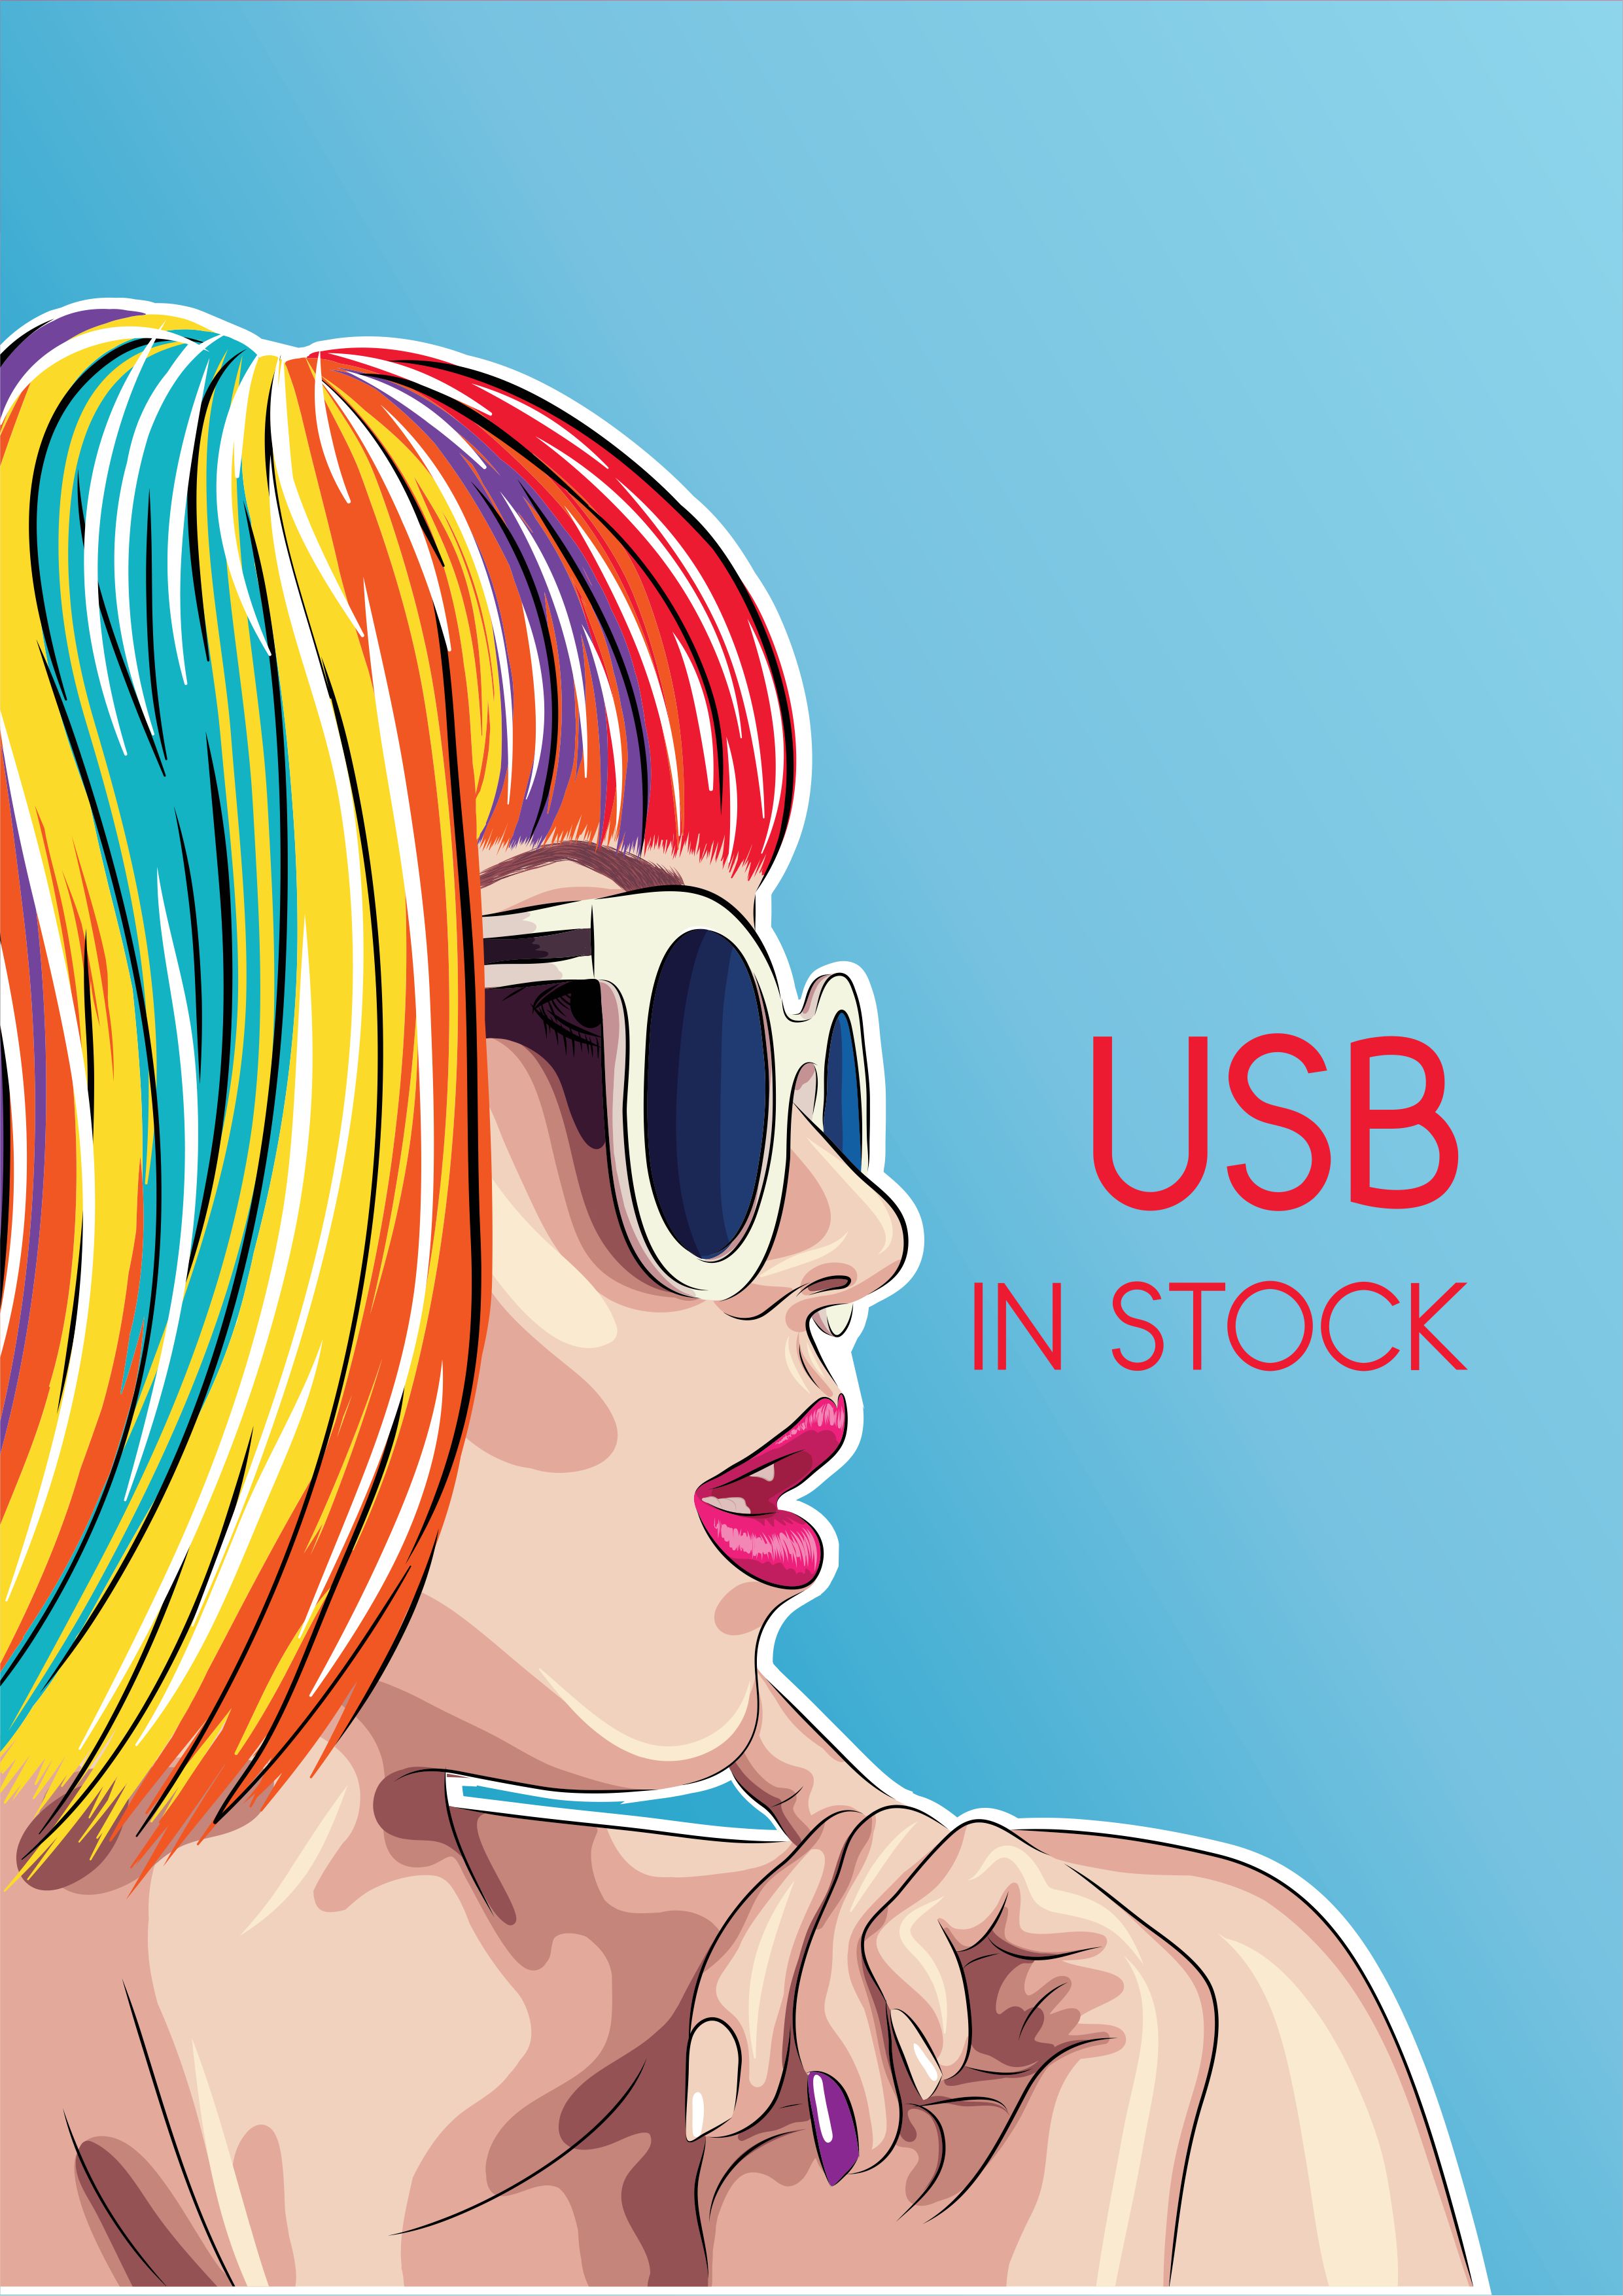 USB IN STOCK